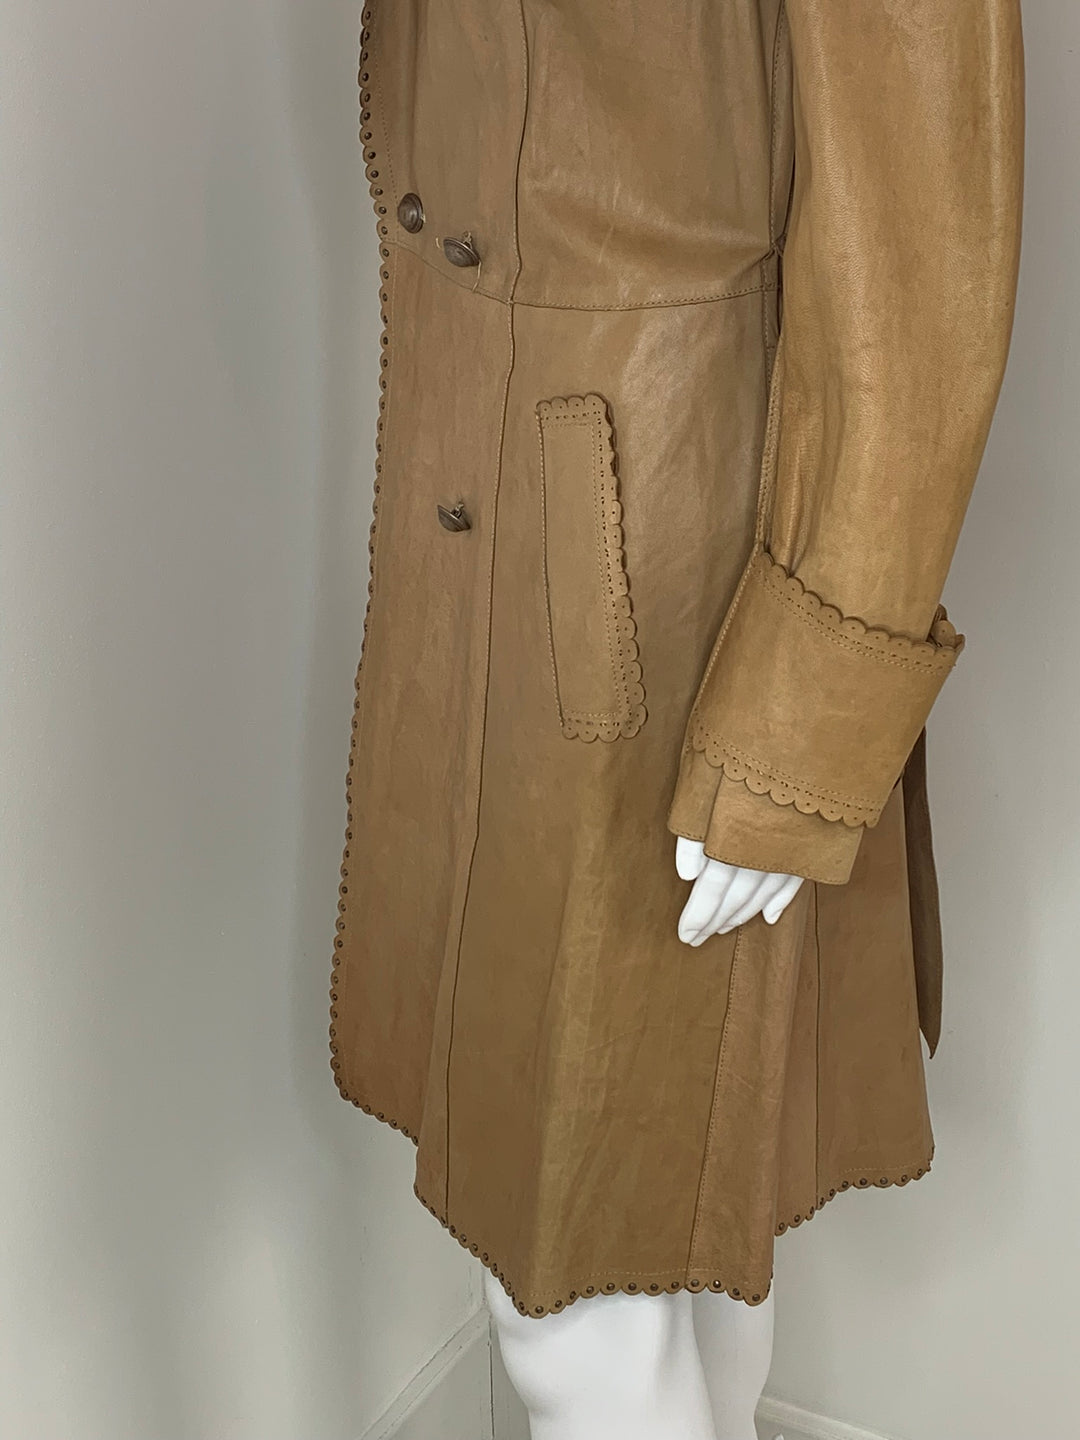 Joseph, Leather Trench Coat , Jacket, Skirt , 2 Piece Set ,2007, Size UK 10